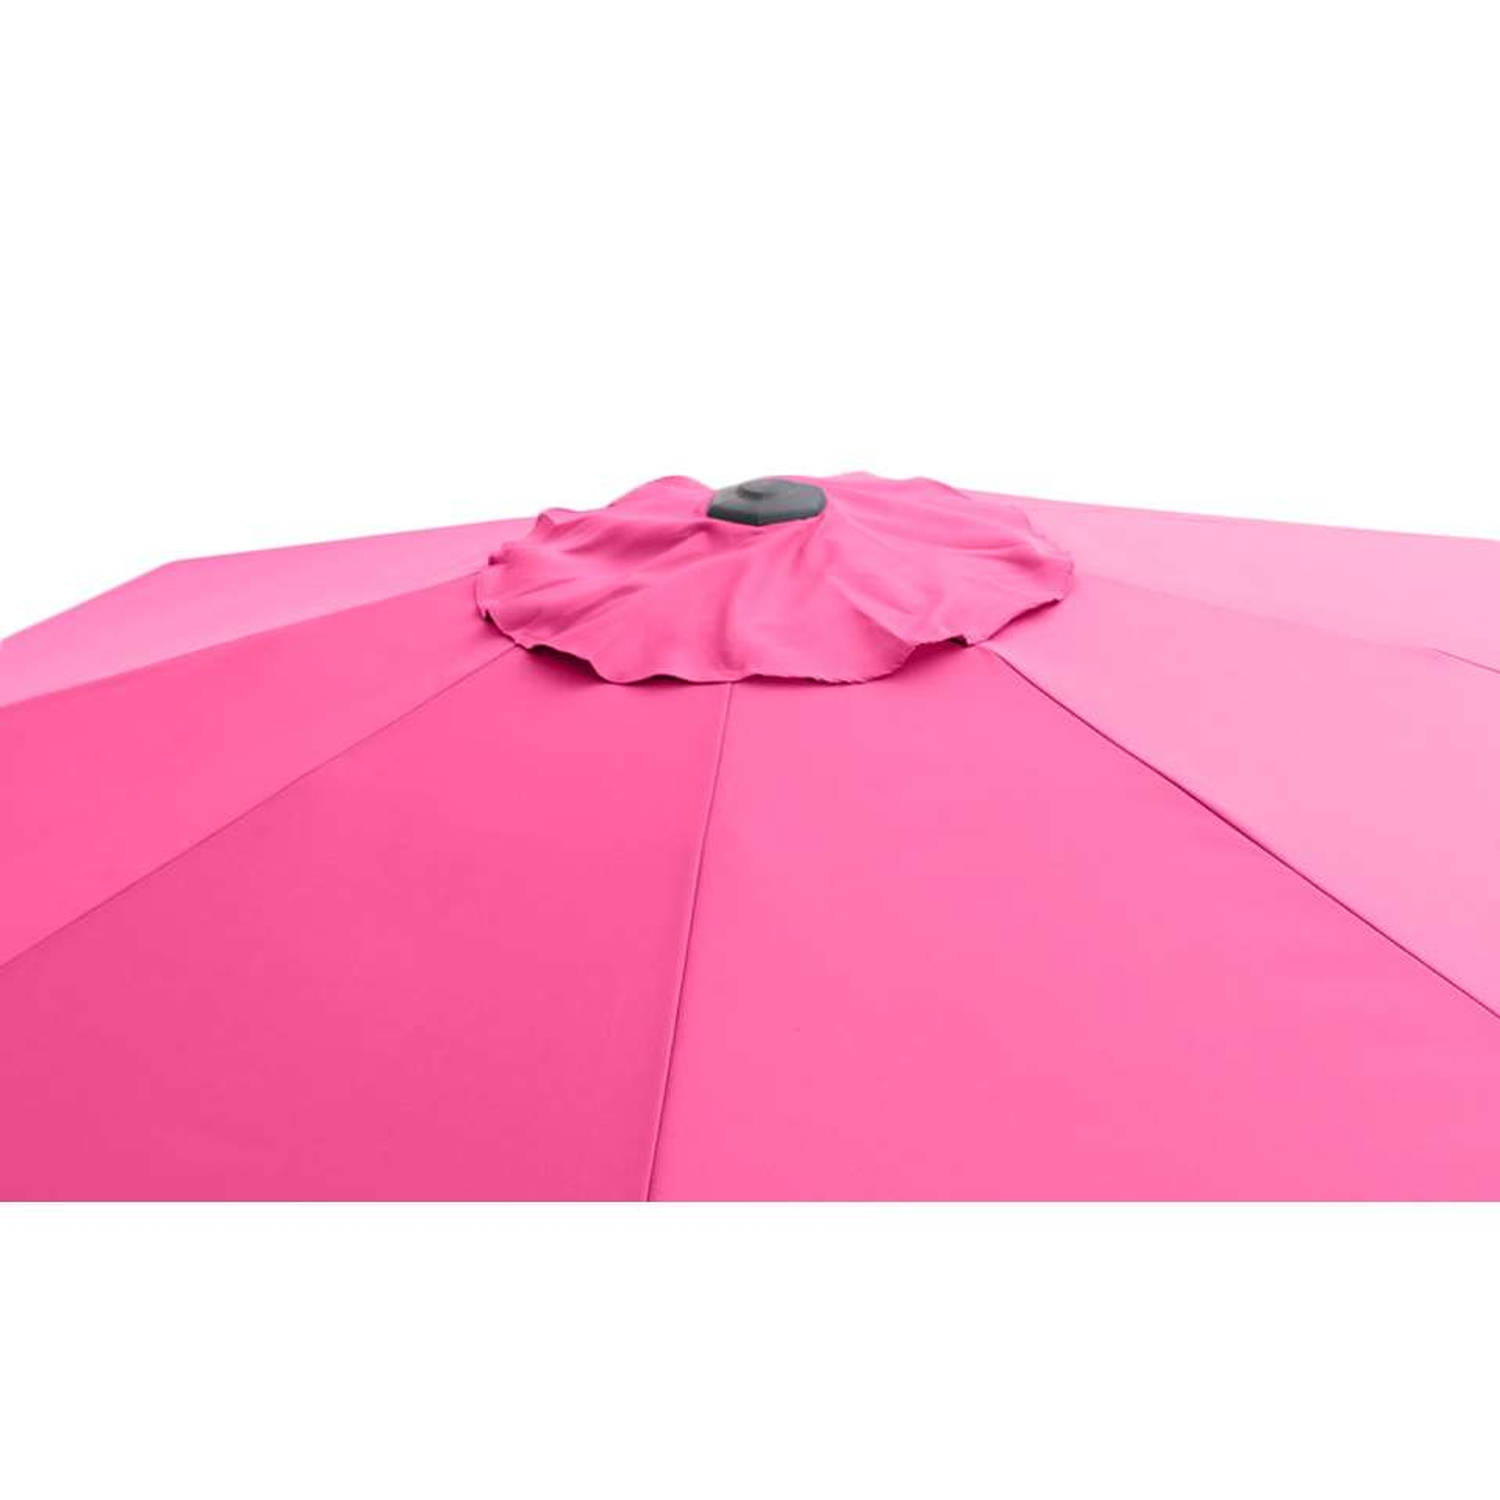 hoogtepunt Meevoelen Wonderbaarlijk Le Sud parasol Dorado met tilt - fuchsia - Ø300 cm | Blokker